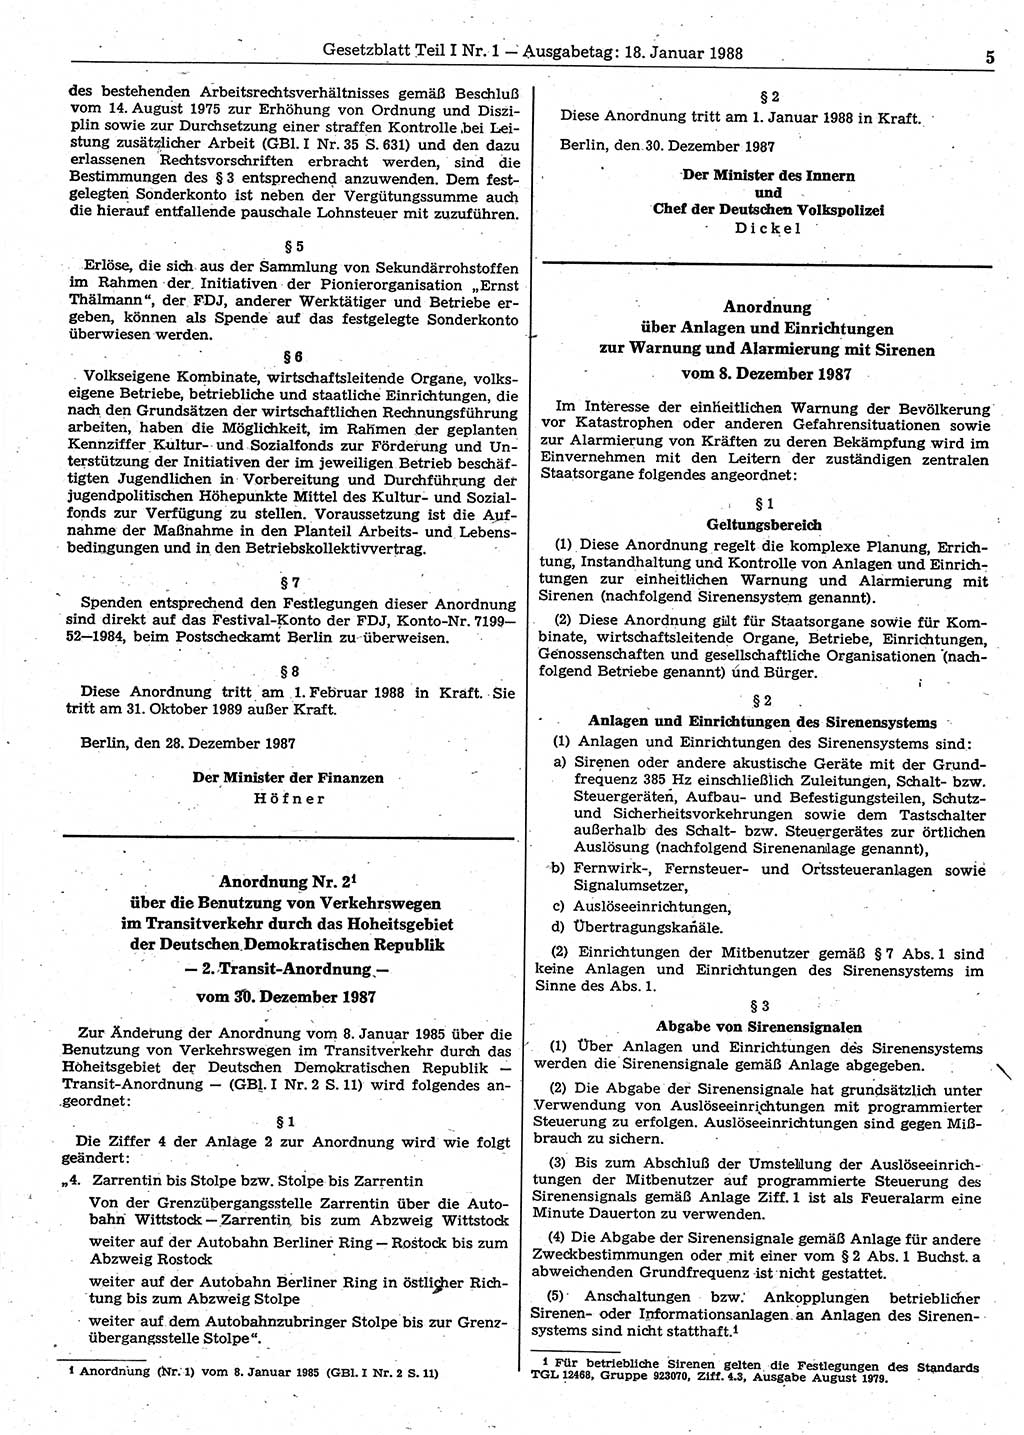 Gesetzblatt (GBl.) der Deutschen Demokratischen Republik (DDR) Teil Ⅰ 1988, Seite 5 (GBl. DDR Ⅰ 1988, S. 5)